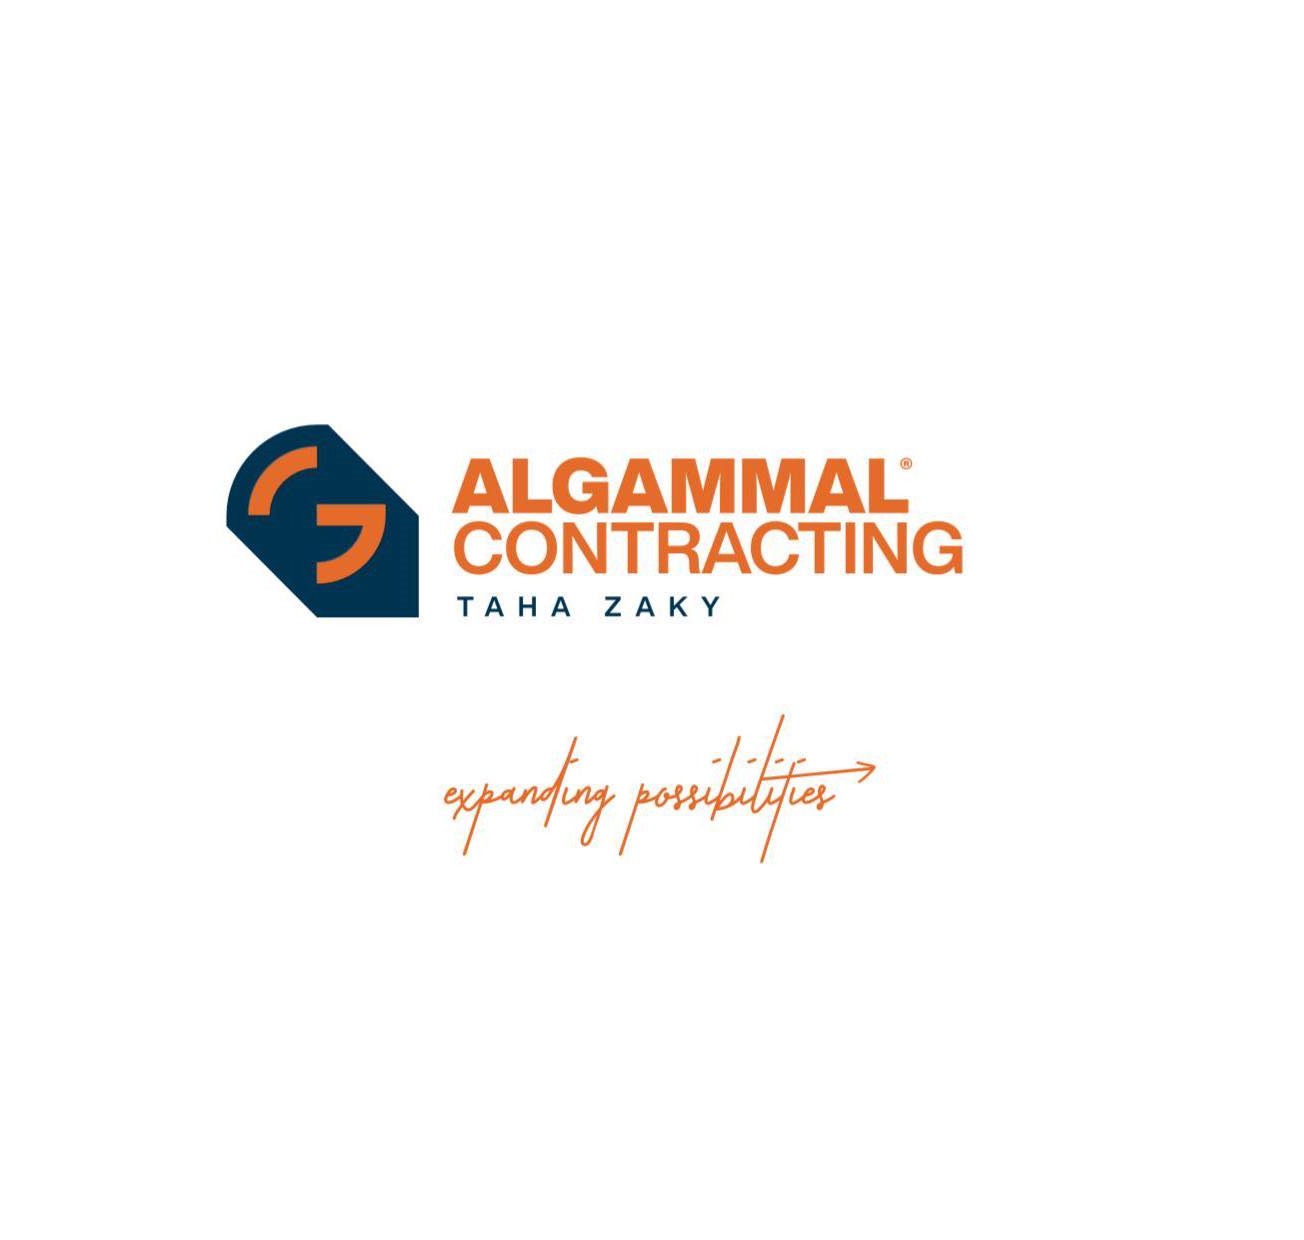 Al Gammal Contracting Company